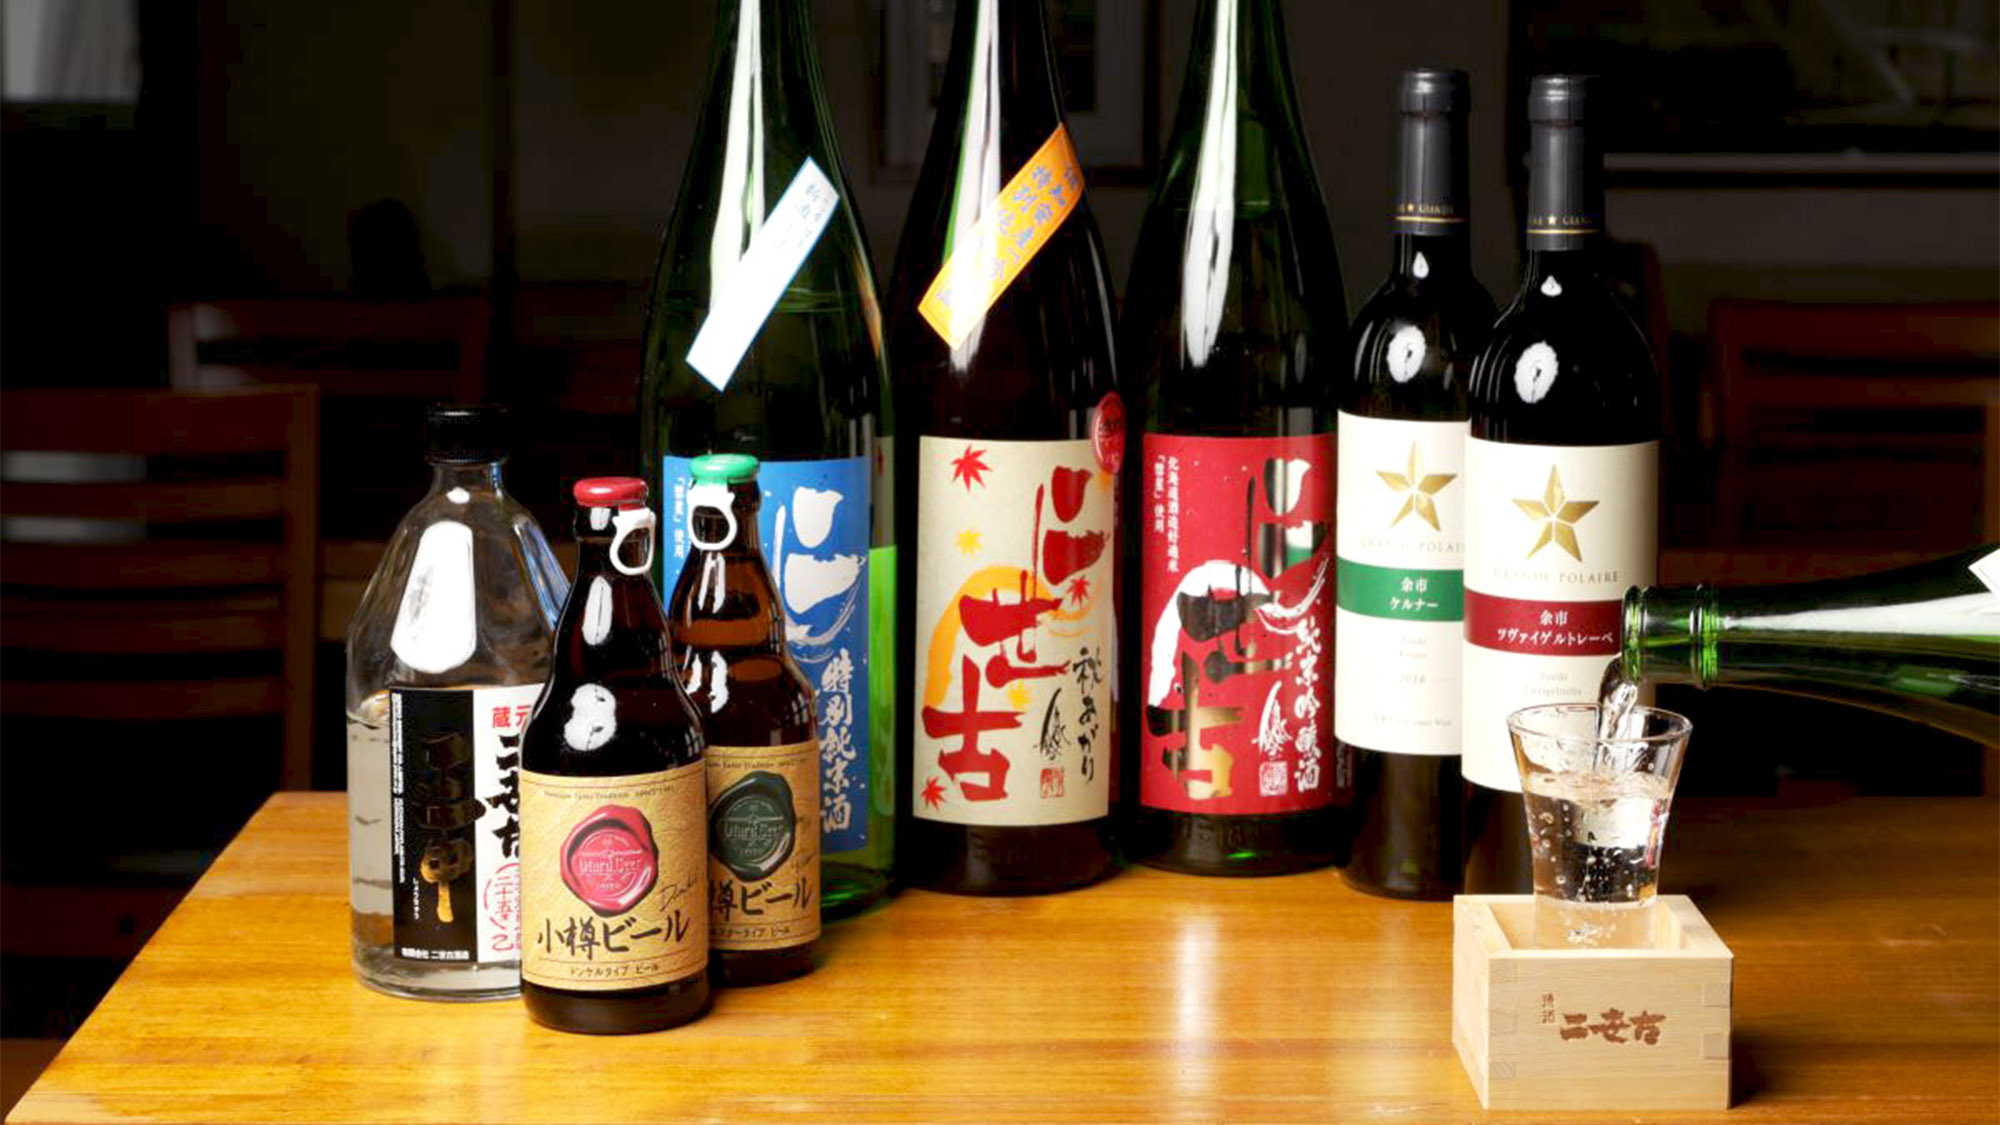 ・羊蹄山の麓の酒蔵「二世古酒造」の日本酒や北海道ワイン、小樽ビールなど揃えております